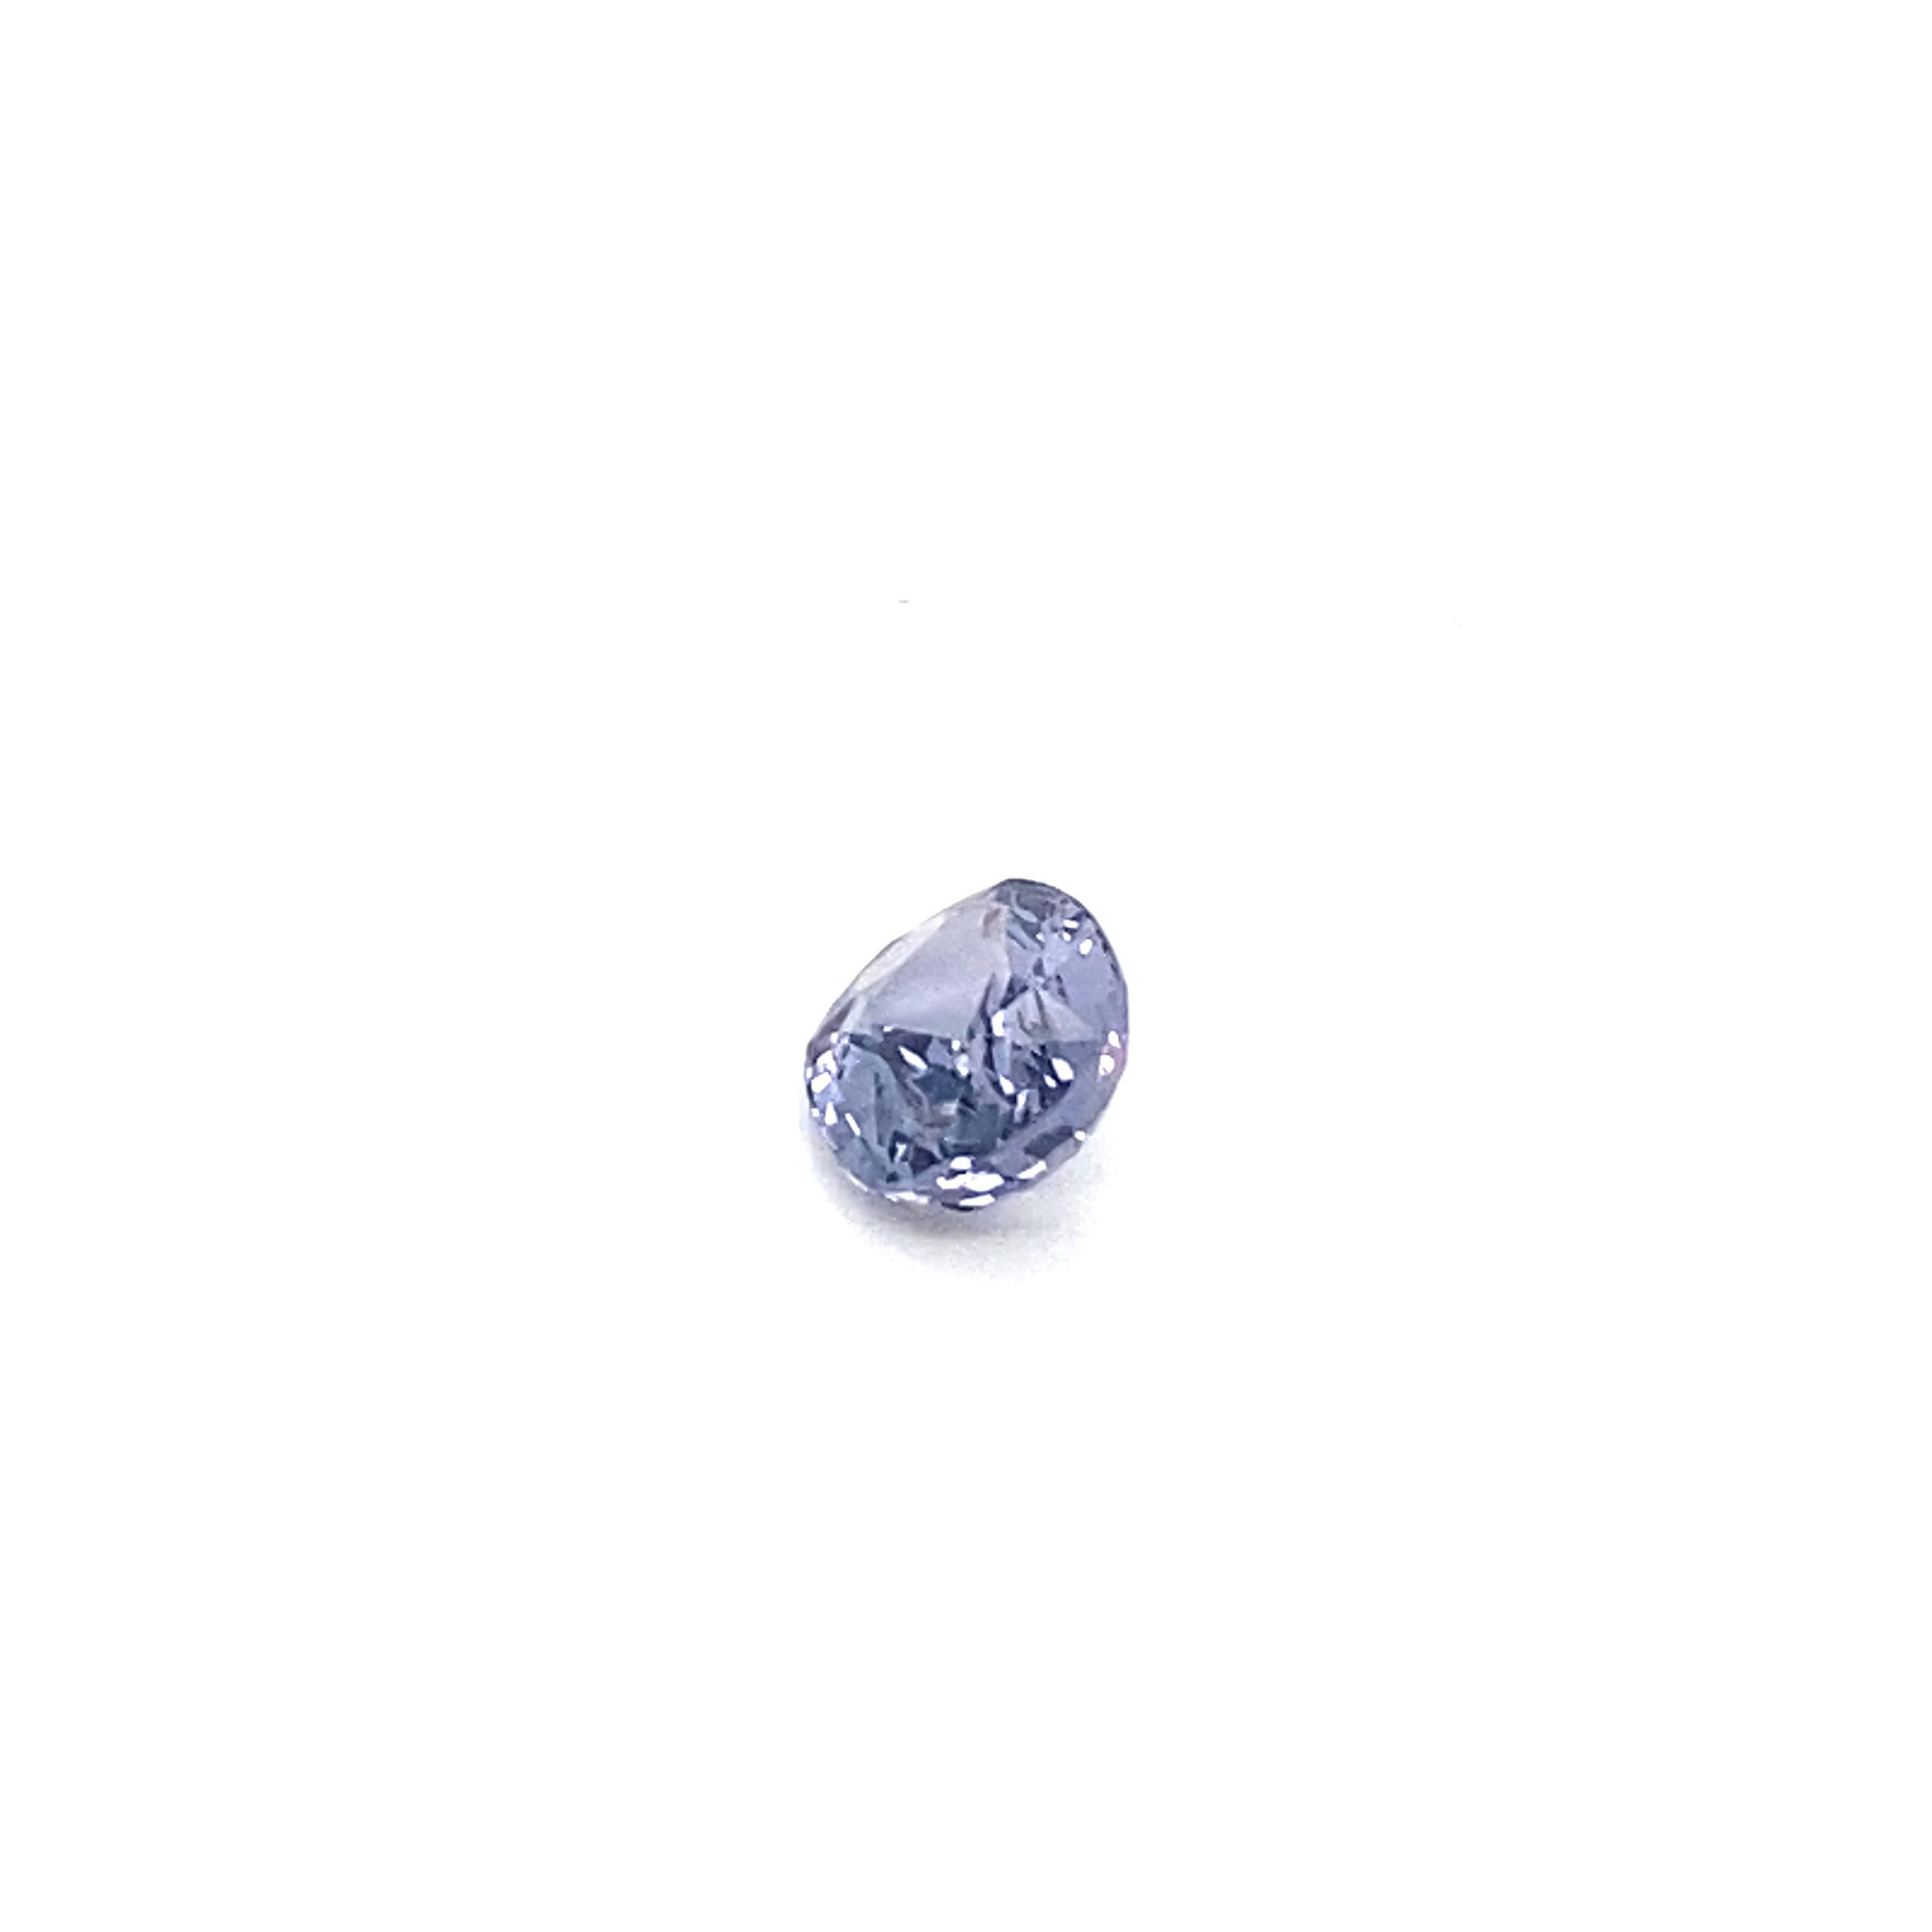 Women's or Men's 1.6 Carat Oval Shape Natural Violet Spinel Loose Gemstone For Sale